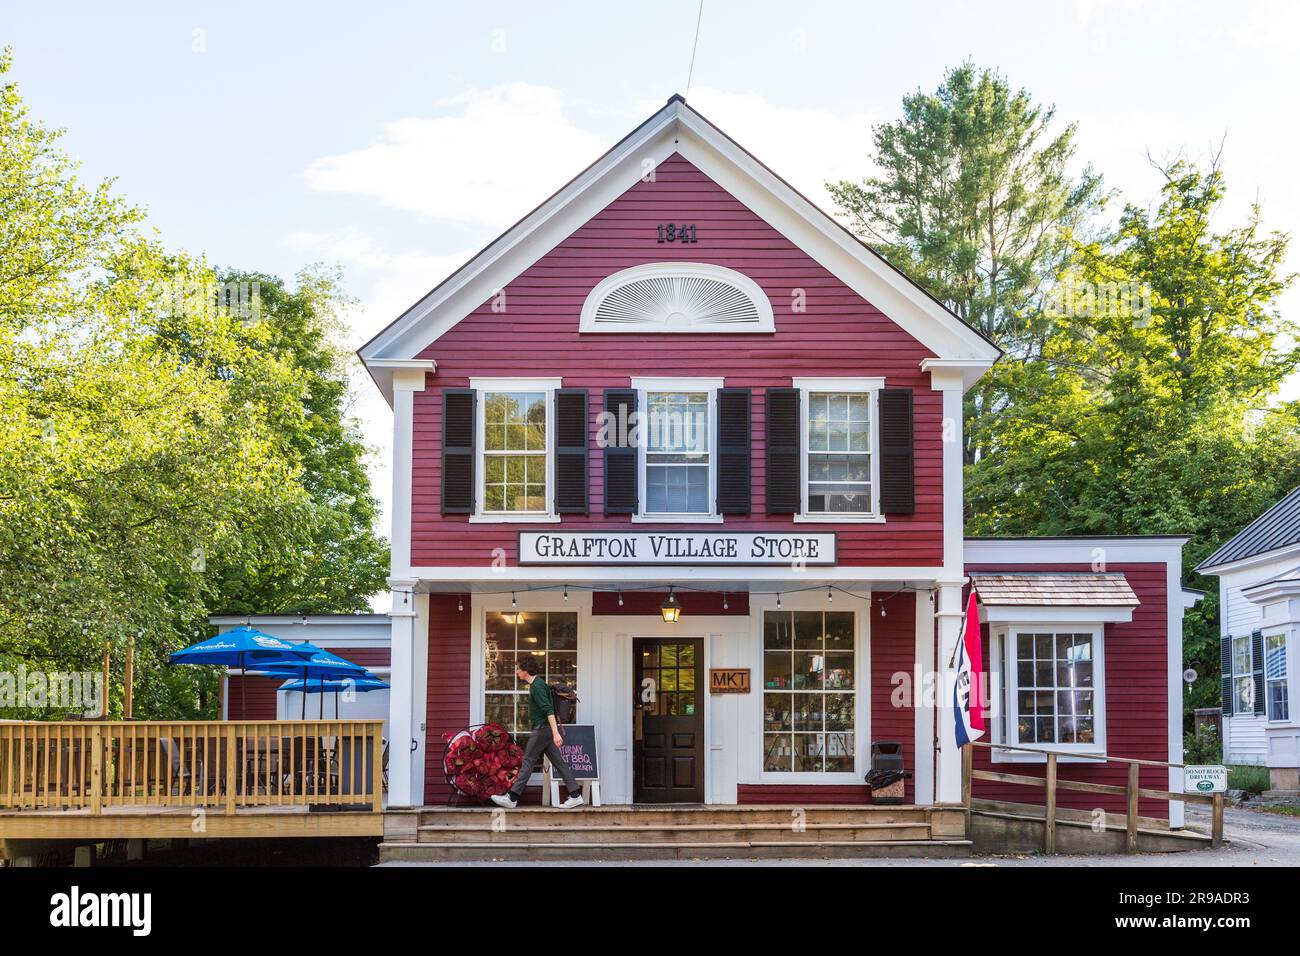 Gemischtwarenladen in einem kleinen Dorf in New England, Grafton, Vermont, USA Stockfoto